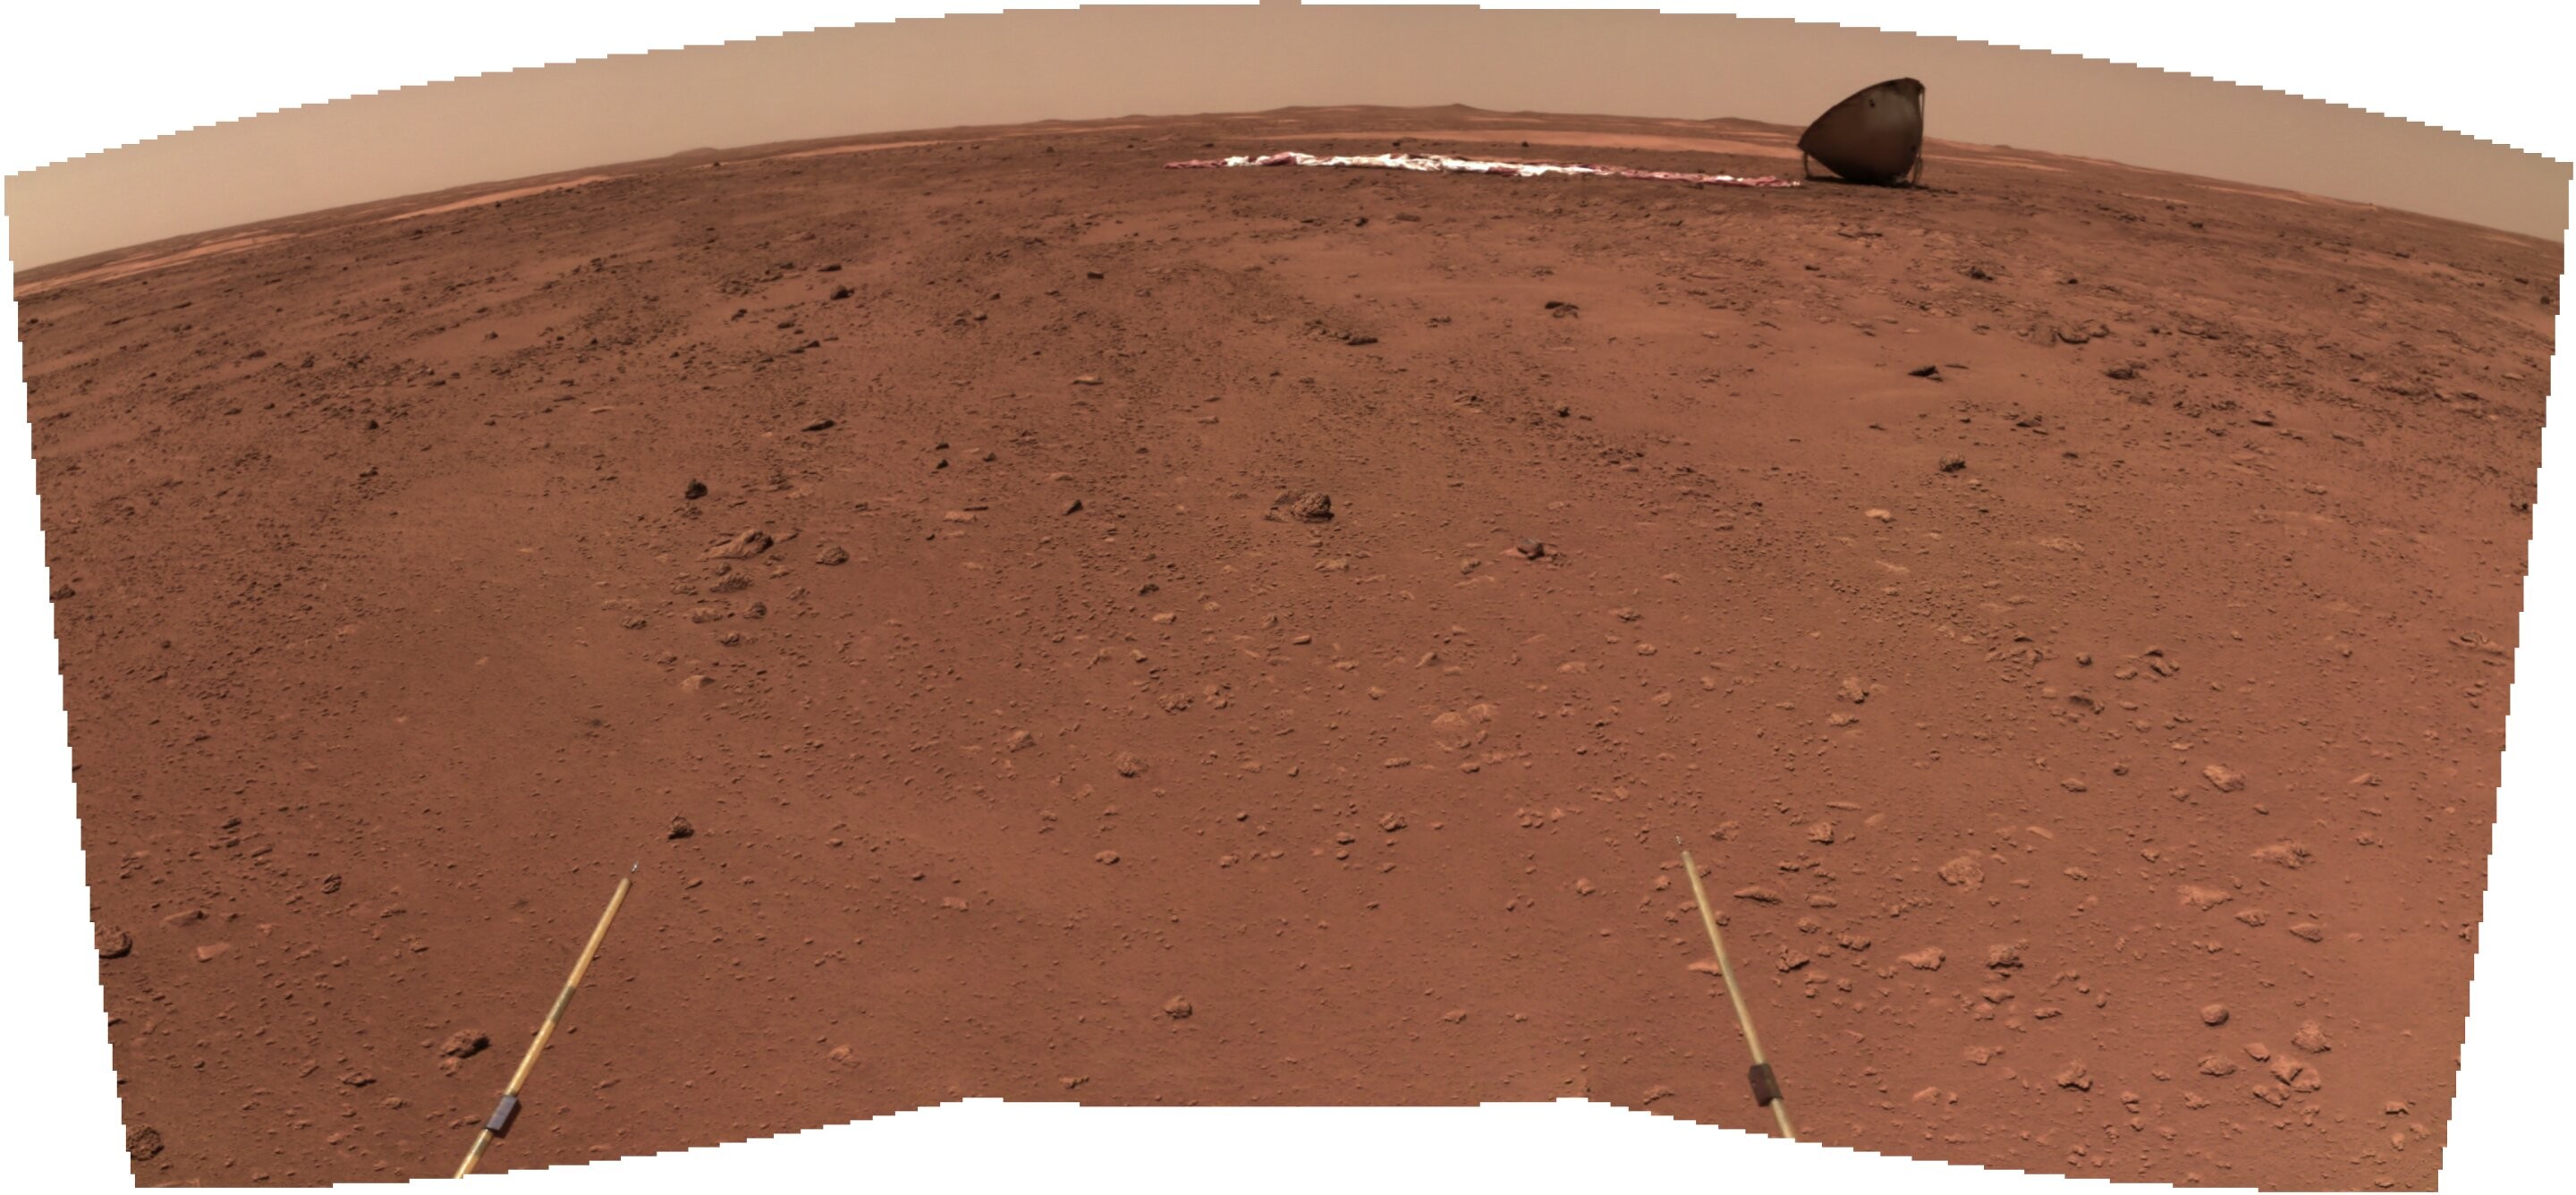 Vista da área de pouso e do escudo térmico do rover Zhurong enviado pela China à Marte  (Foto: CNSA )